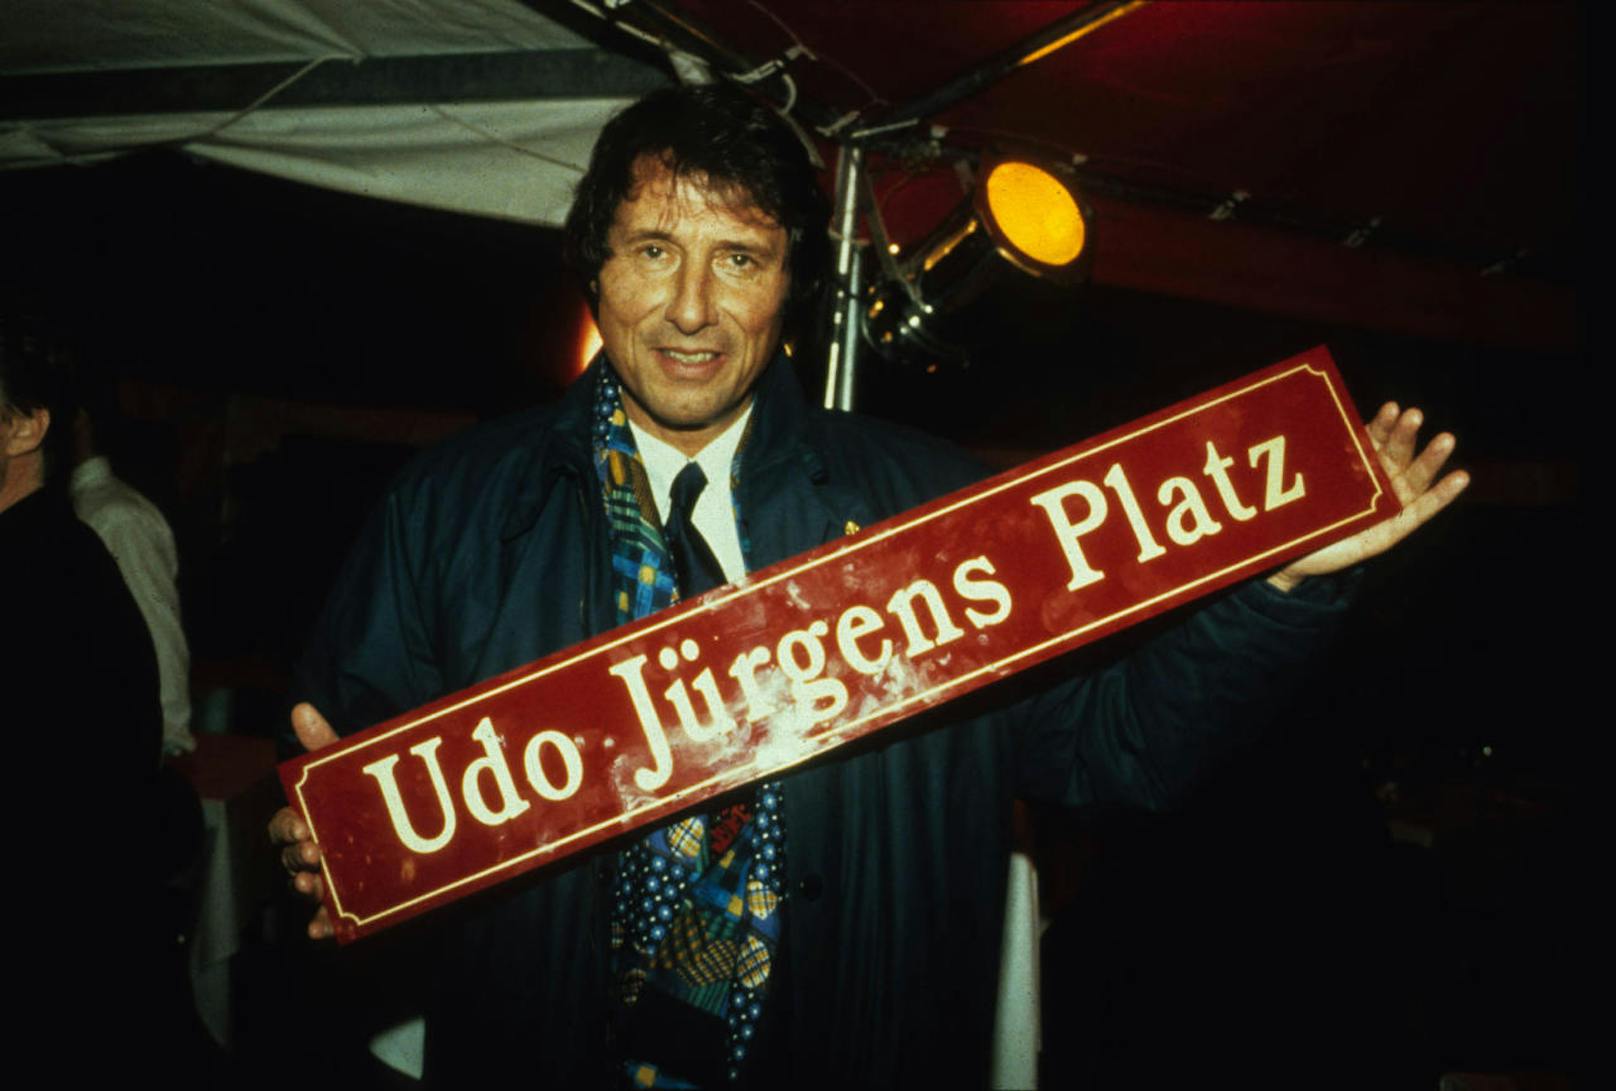 Udo Jürgens mit einem "Udo Jürgens Platz"-Schild